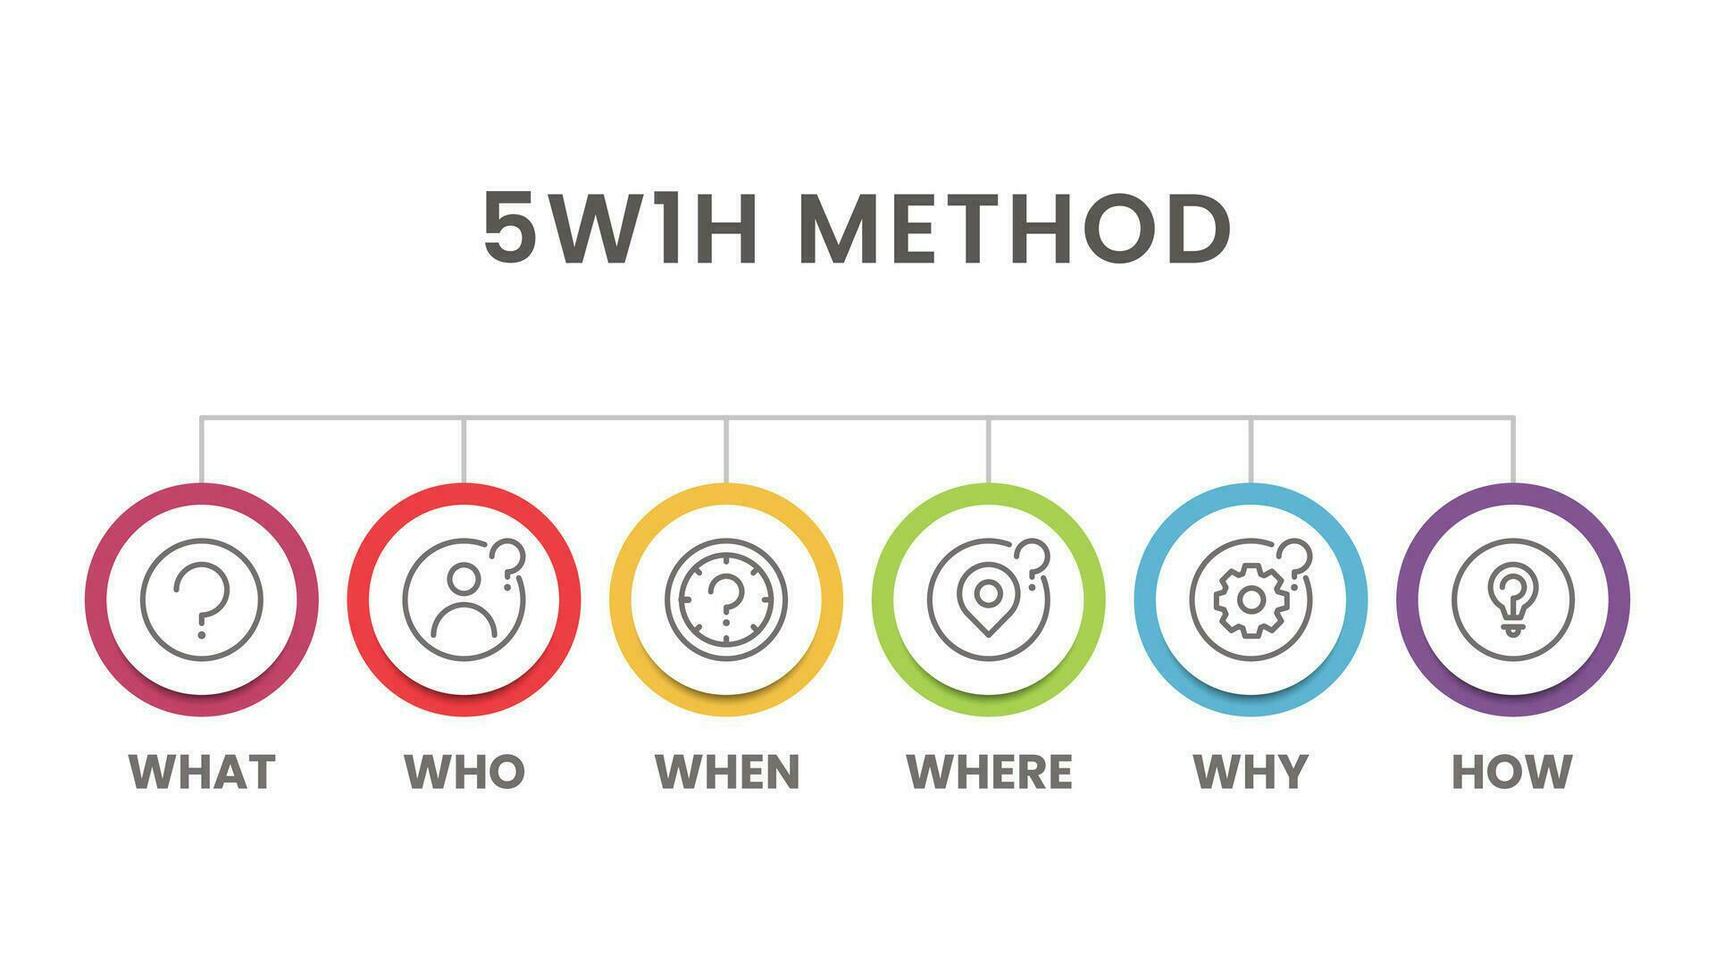 5W1H problem solving method infographic for slide presentation vector